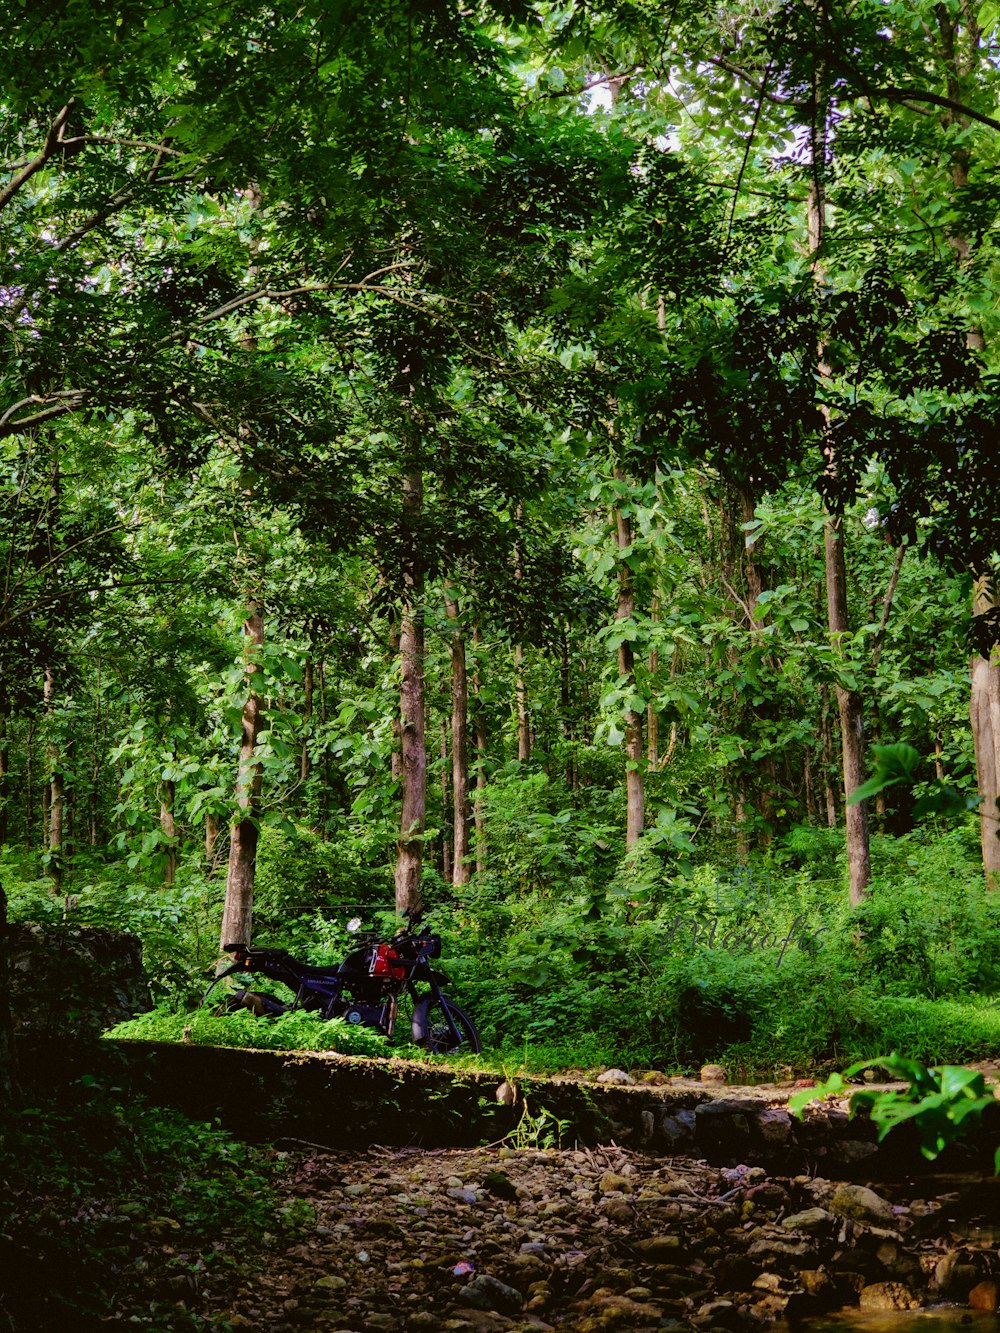 a person riding a bike through a lush green forest